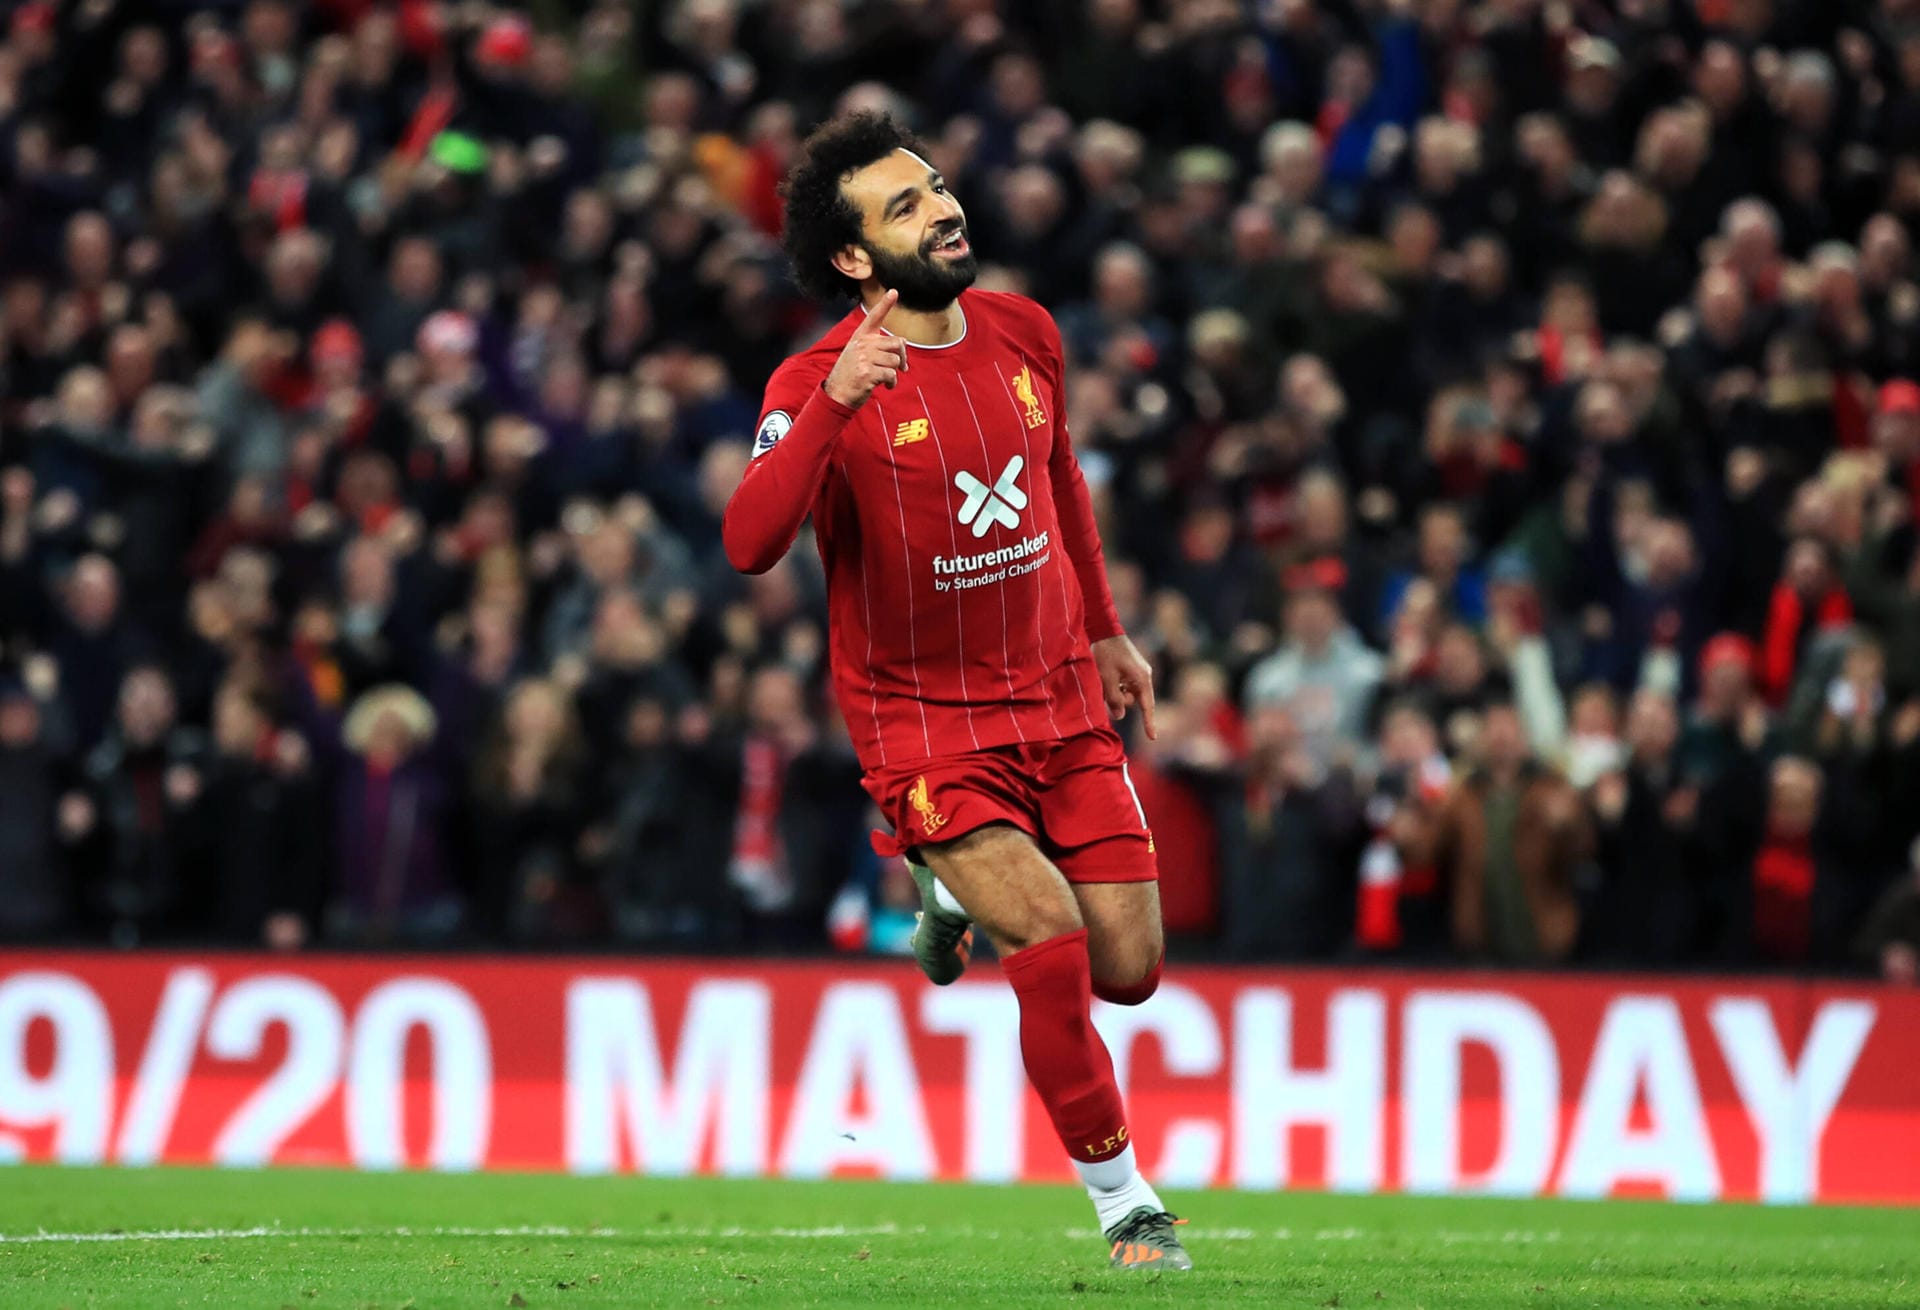 Mohamed Salah, Liverpool: 37 Millionen US-Dollar.